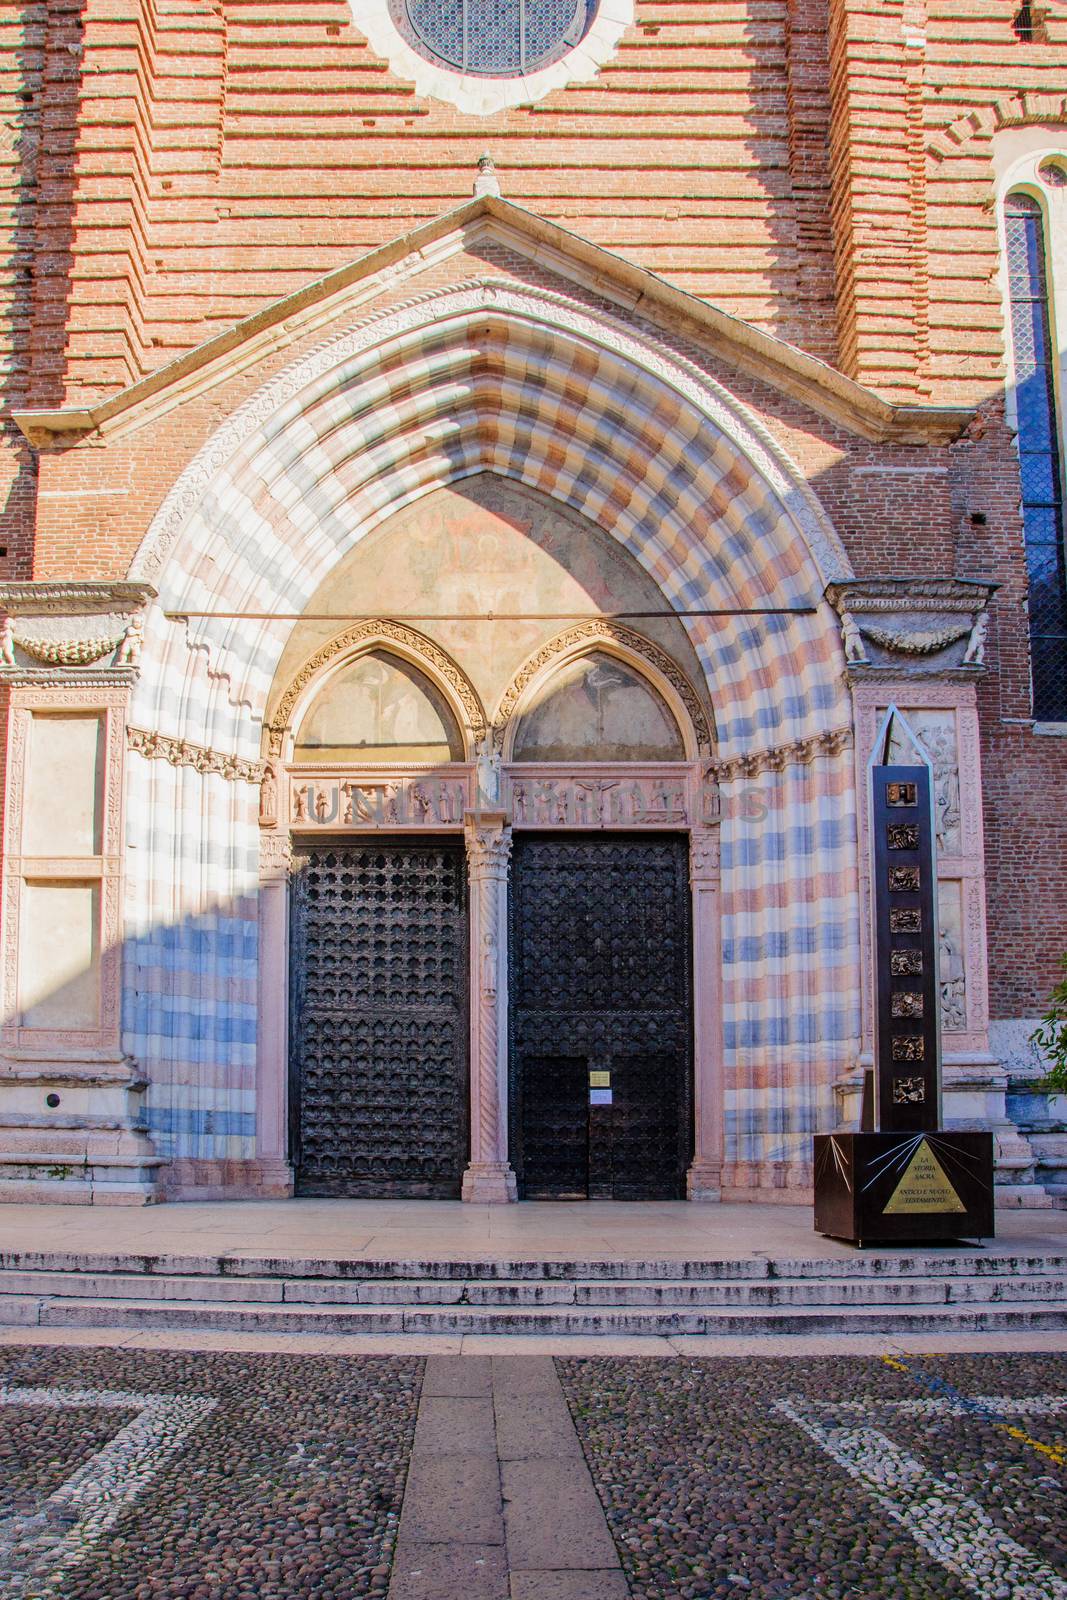 Sant-Anastasia church, Verona by RnDmS